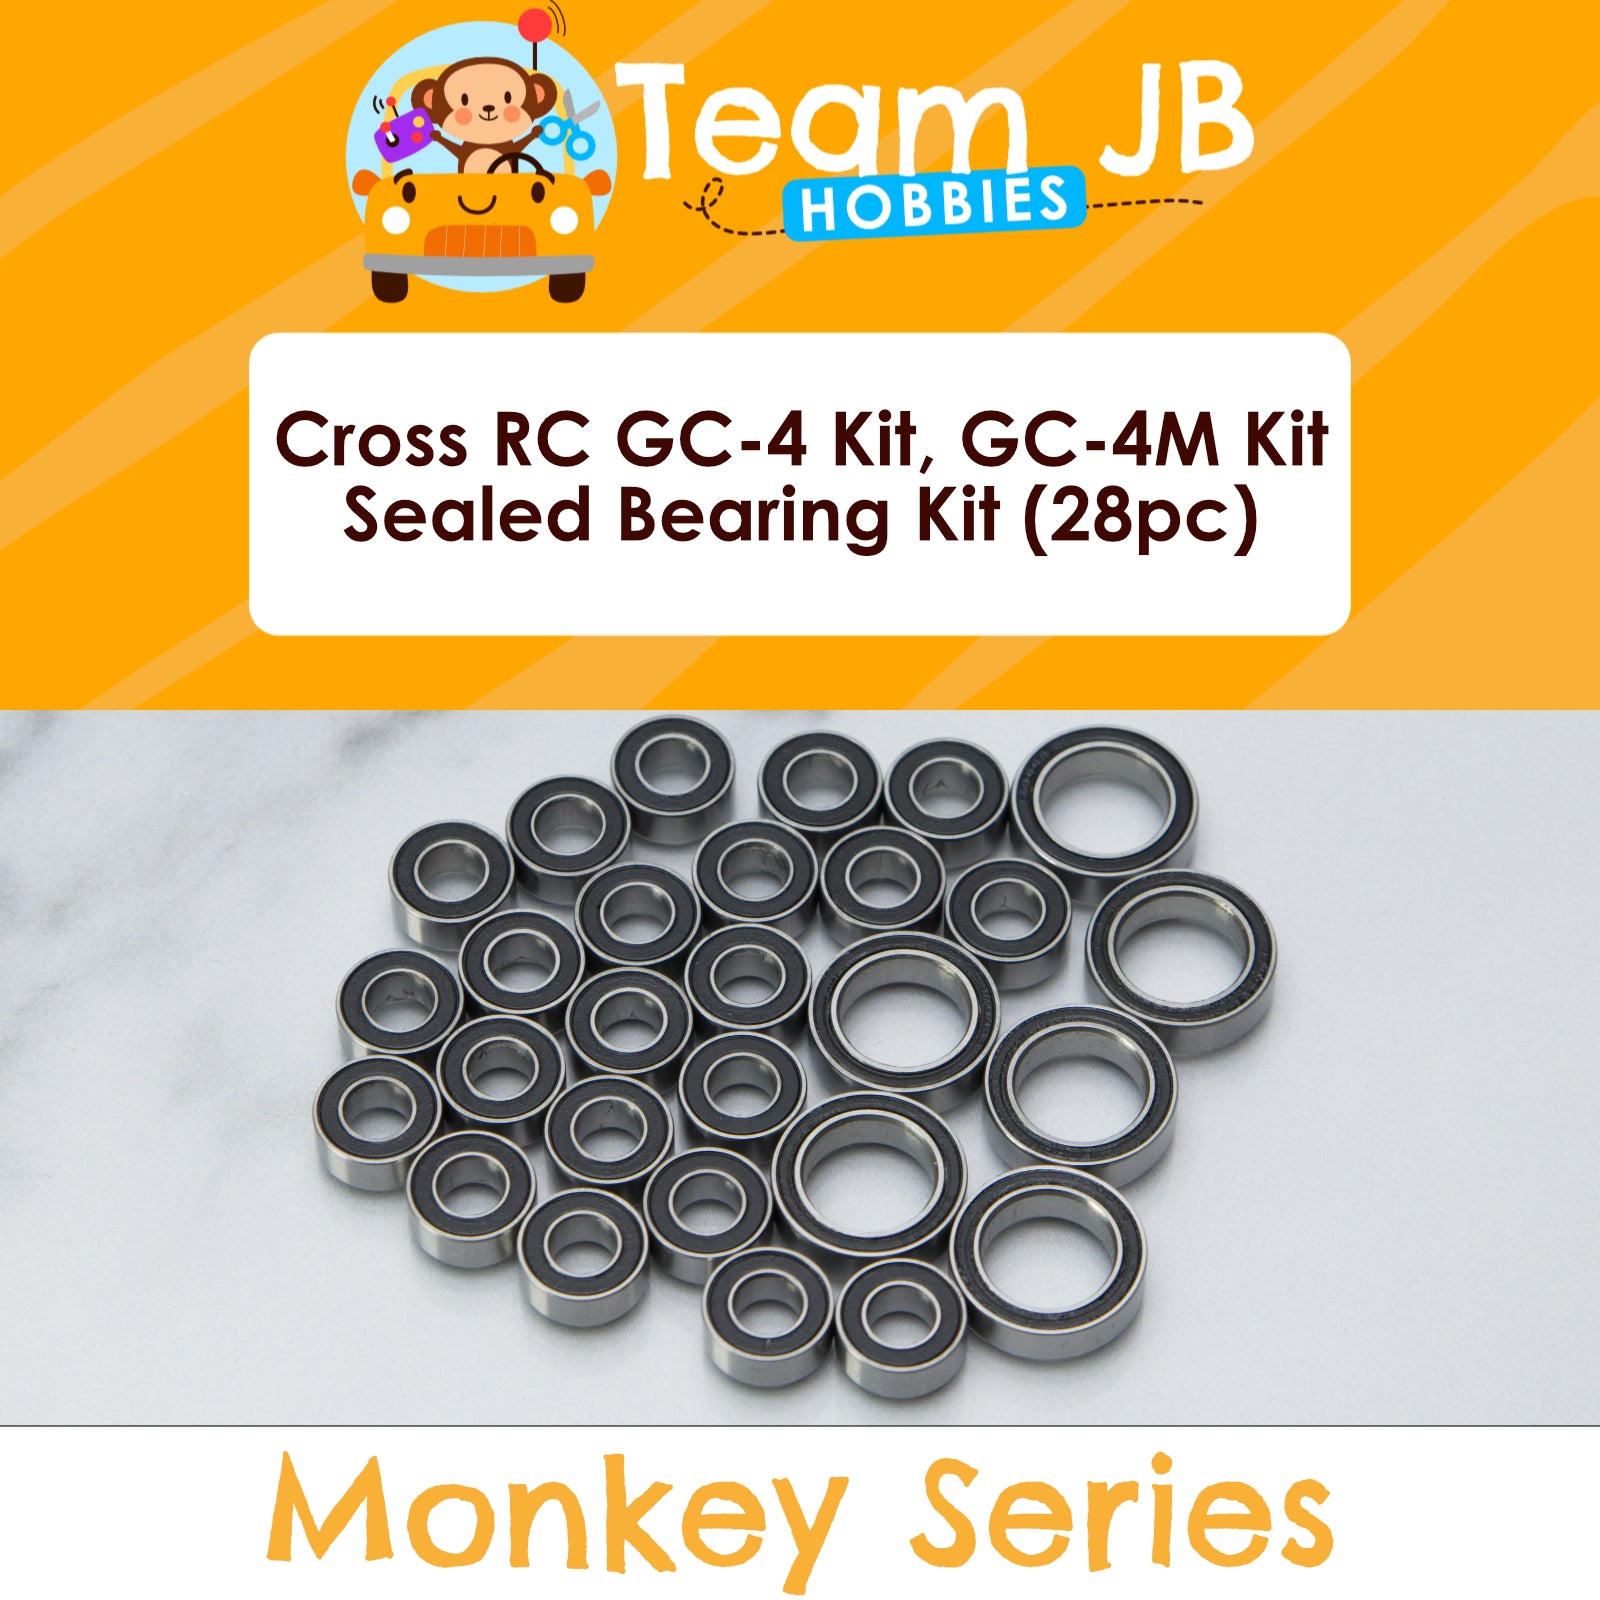 Cross RC GC-4 Kit, GC-4M Kit - Sealed Bearing Kit